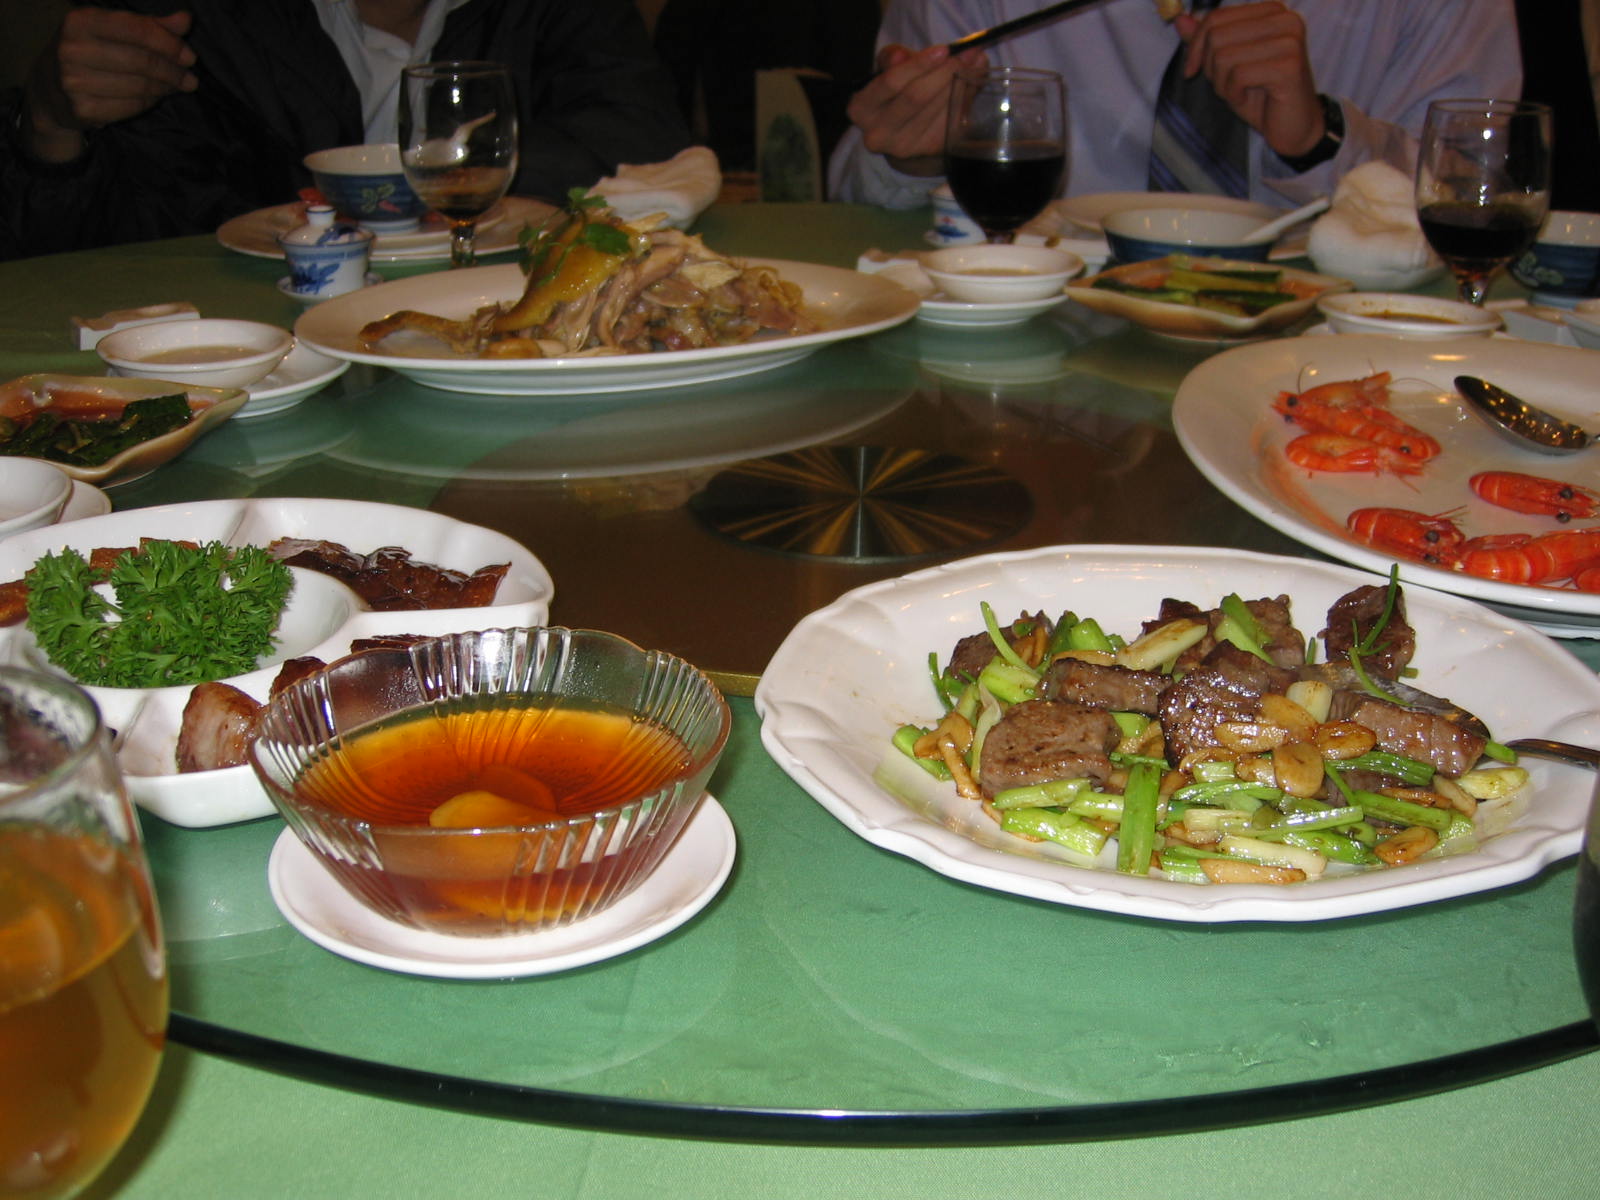 Food at 1st Banquet